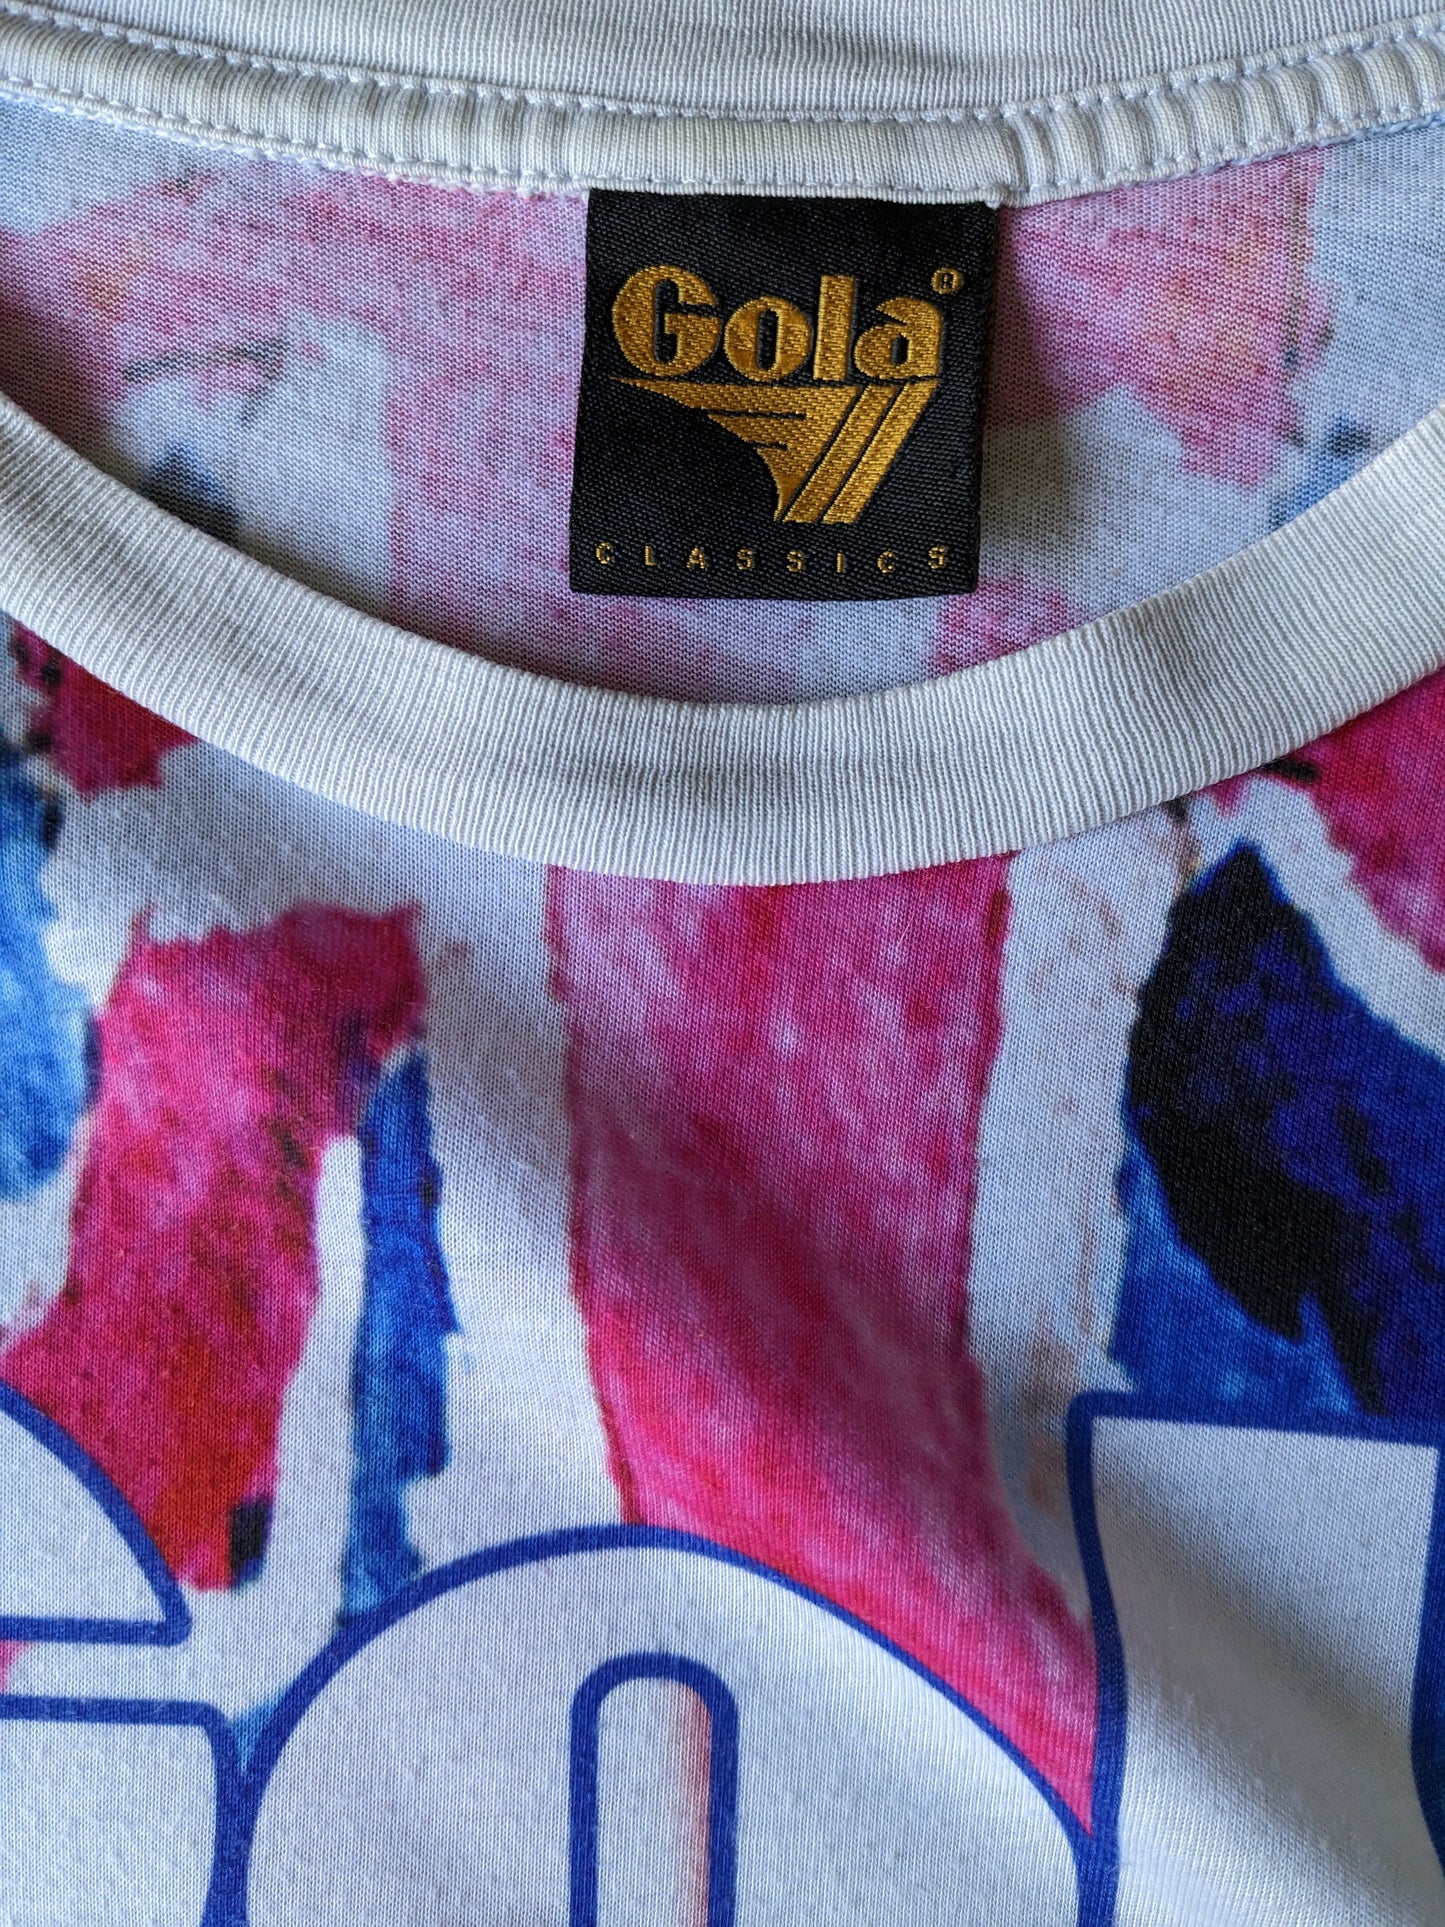 Shirt di Gola Classics. Stampa rosa bianco blu. Taglia M.